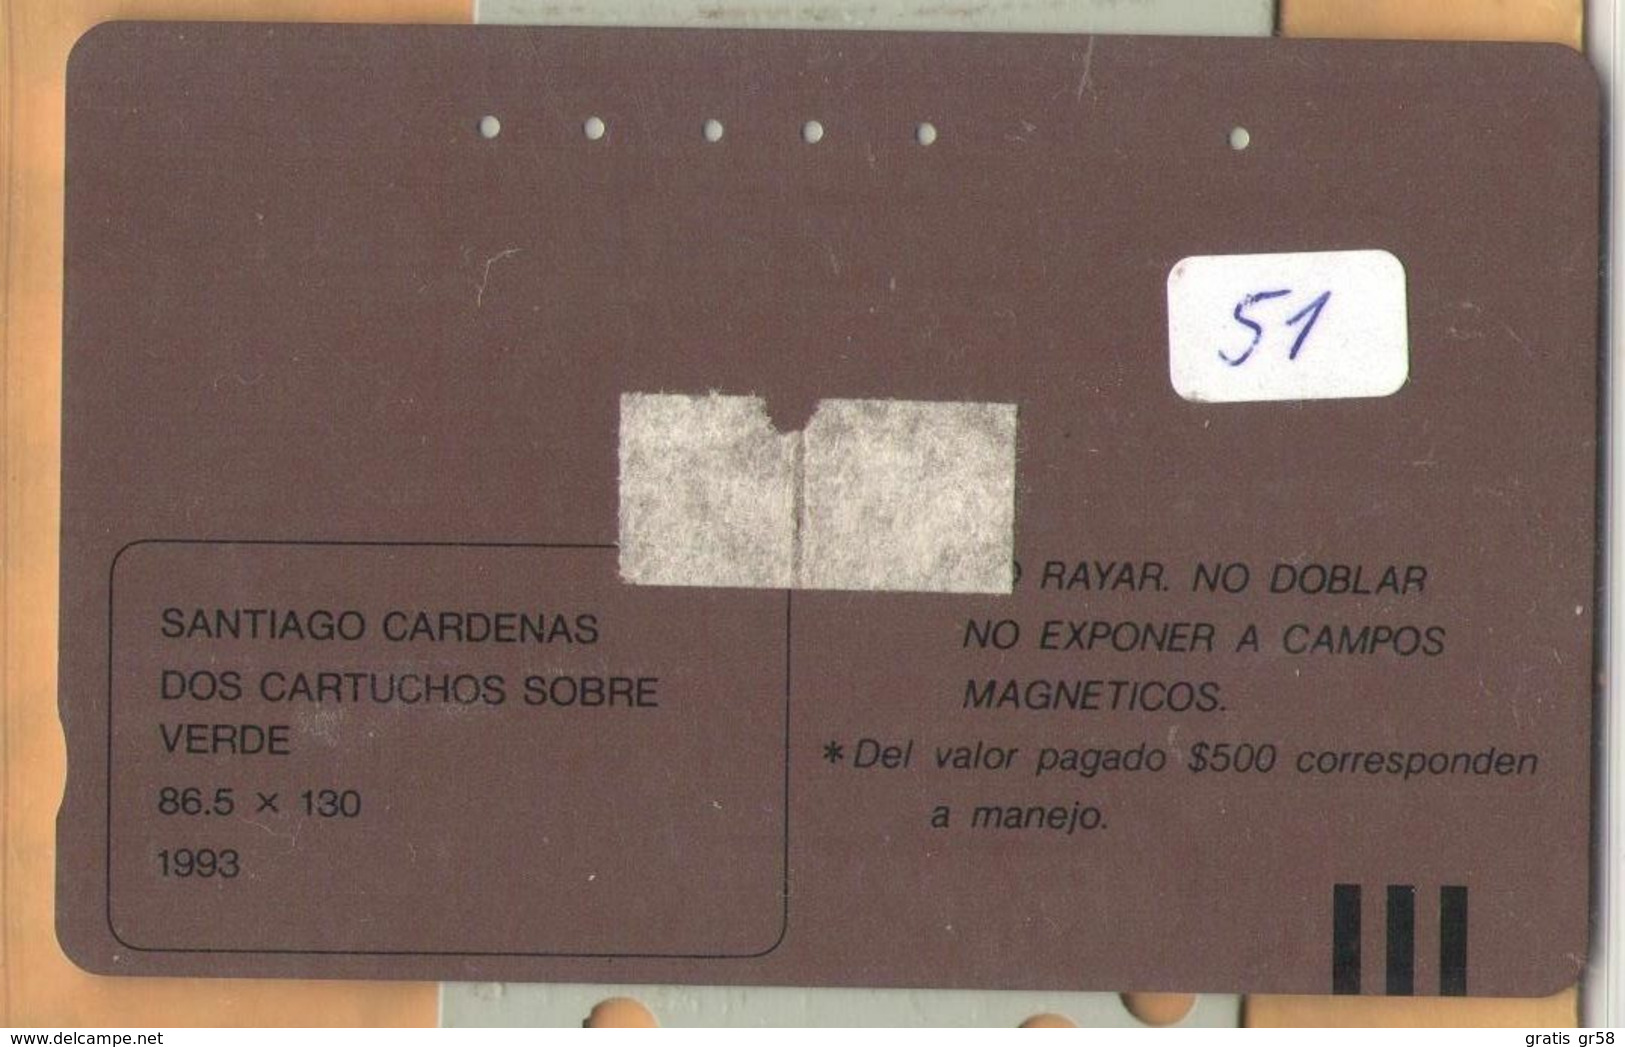 Colombia - CO-MT-51, Tamura, Dos Cartuchos Sobre Verde, Santiago Cardenas, Art, 5,500 $, 10.000ex, Used - Colombia